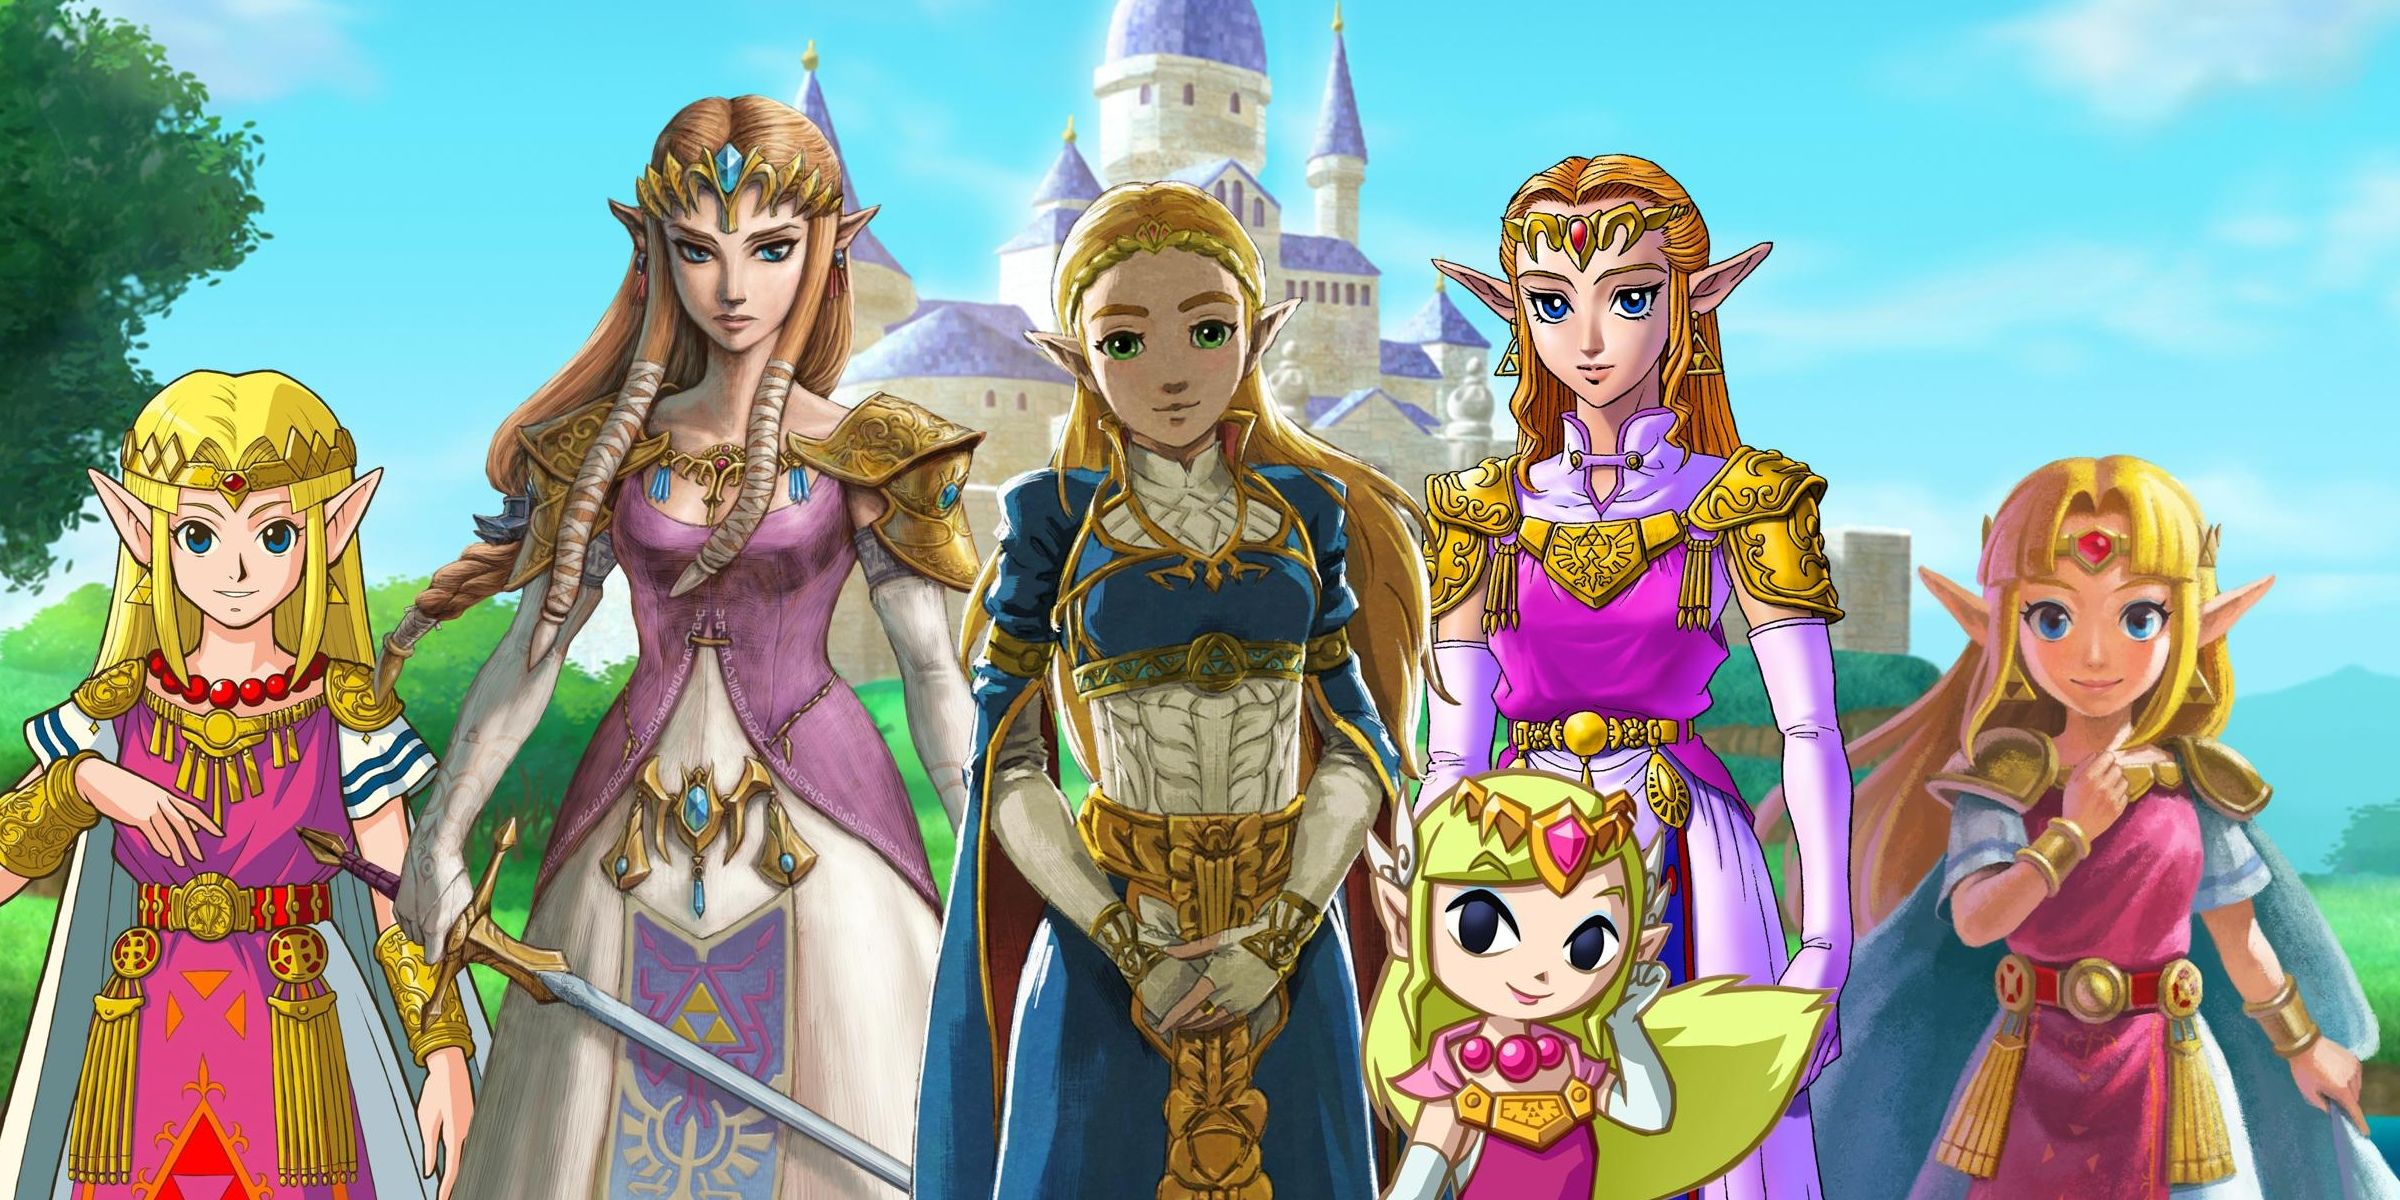 Many Zeldas from across the Legend of Zelda series